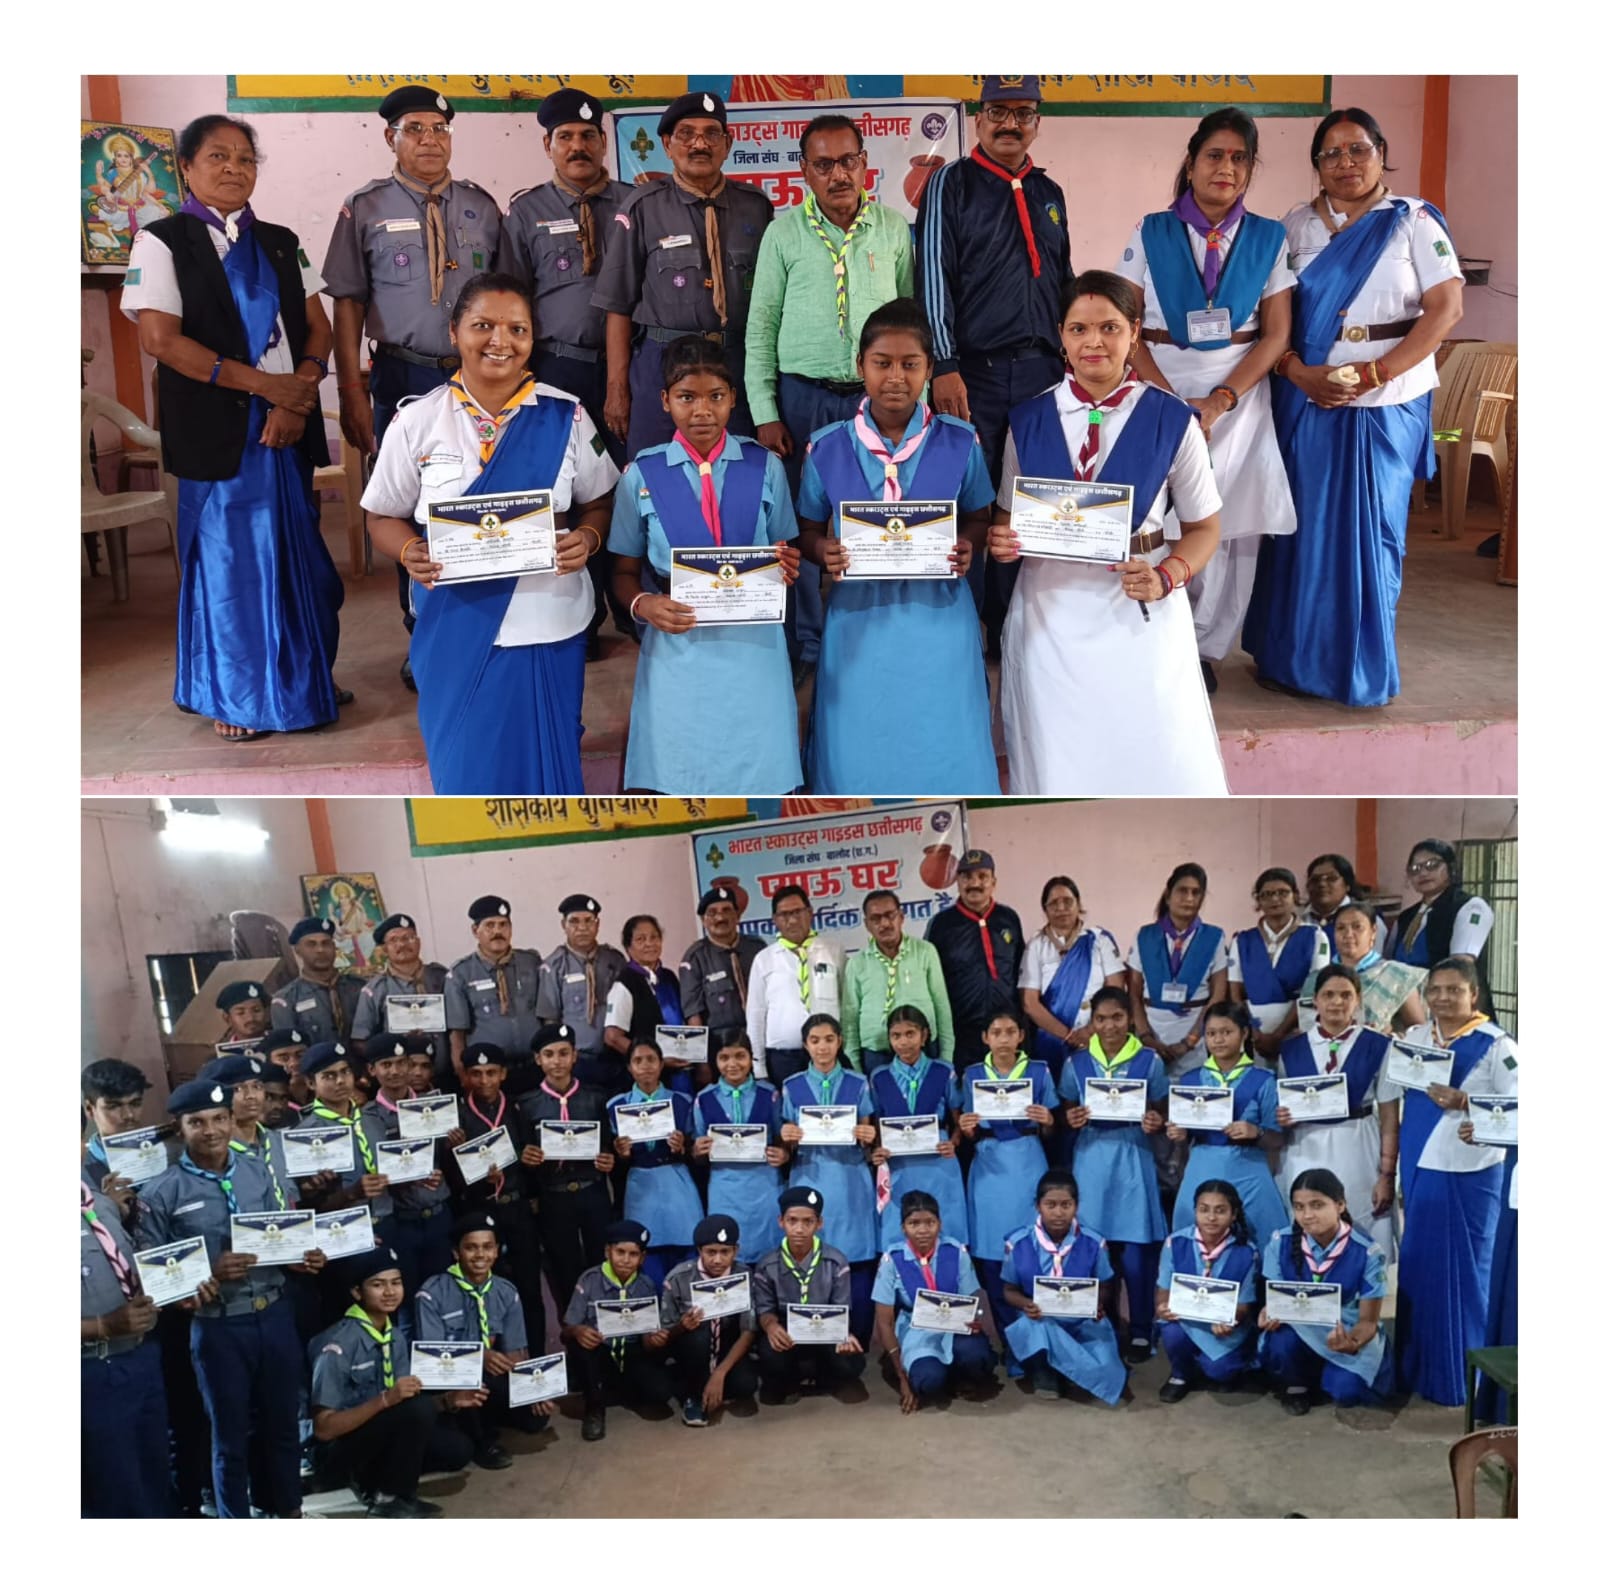 भारत स्काउट गाइड के बच्चों एवम् प्रभारी शिक्षको को प्रमाण पत्र वितरण किया गया